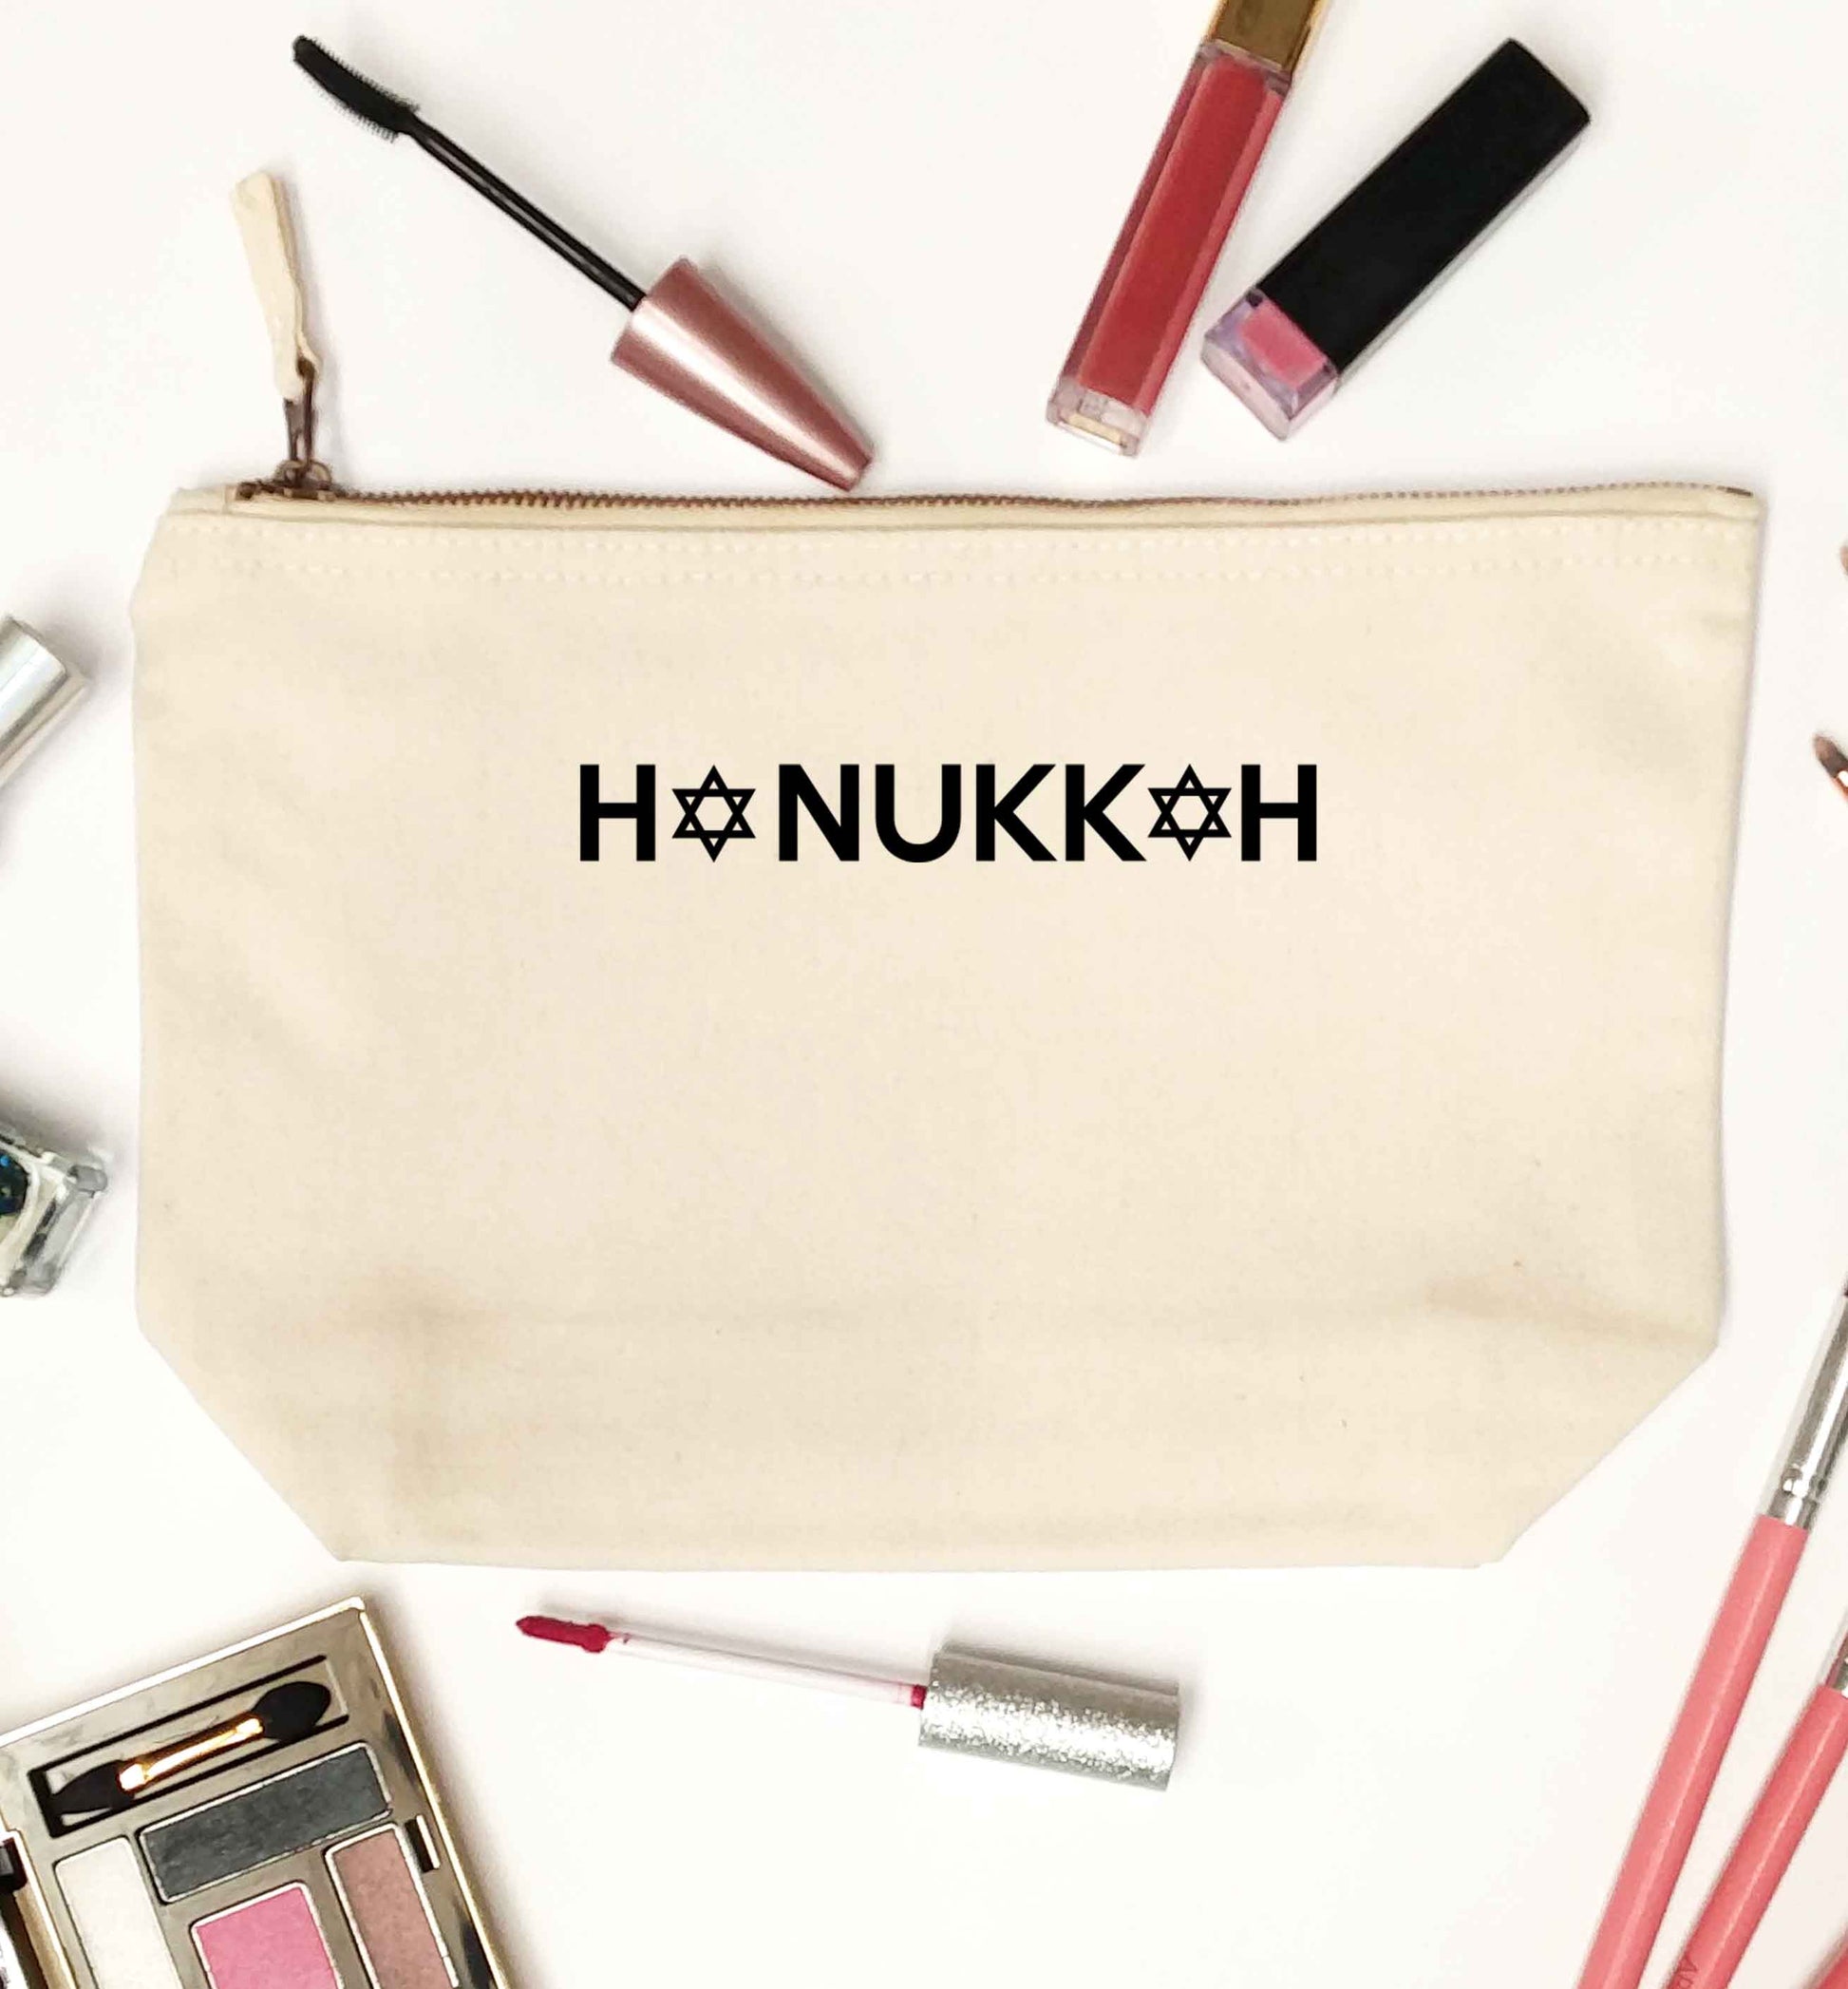 Hanukkah star of david natural makeup bag